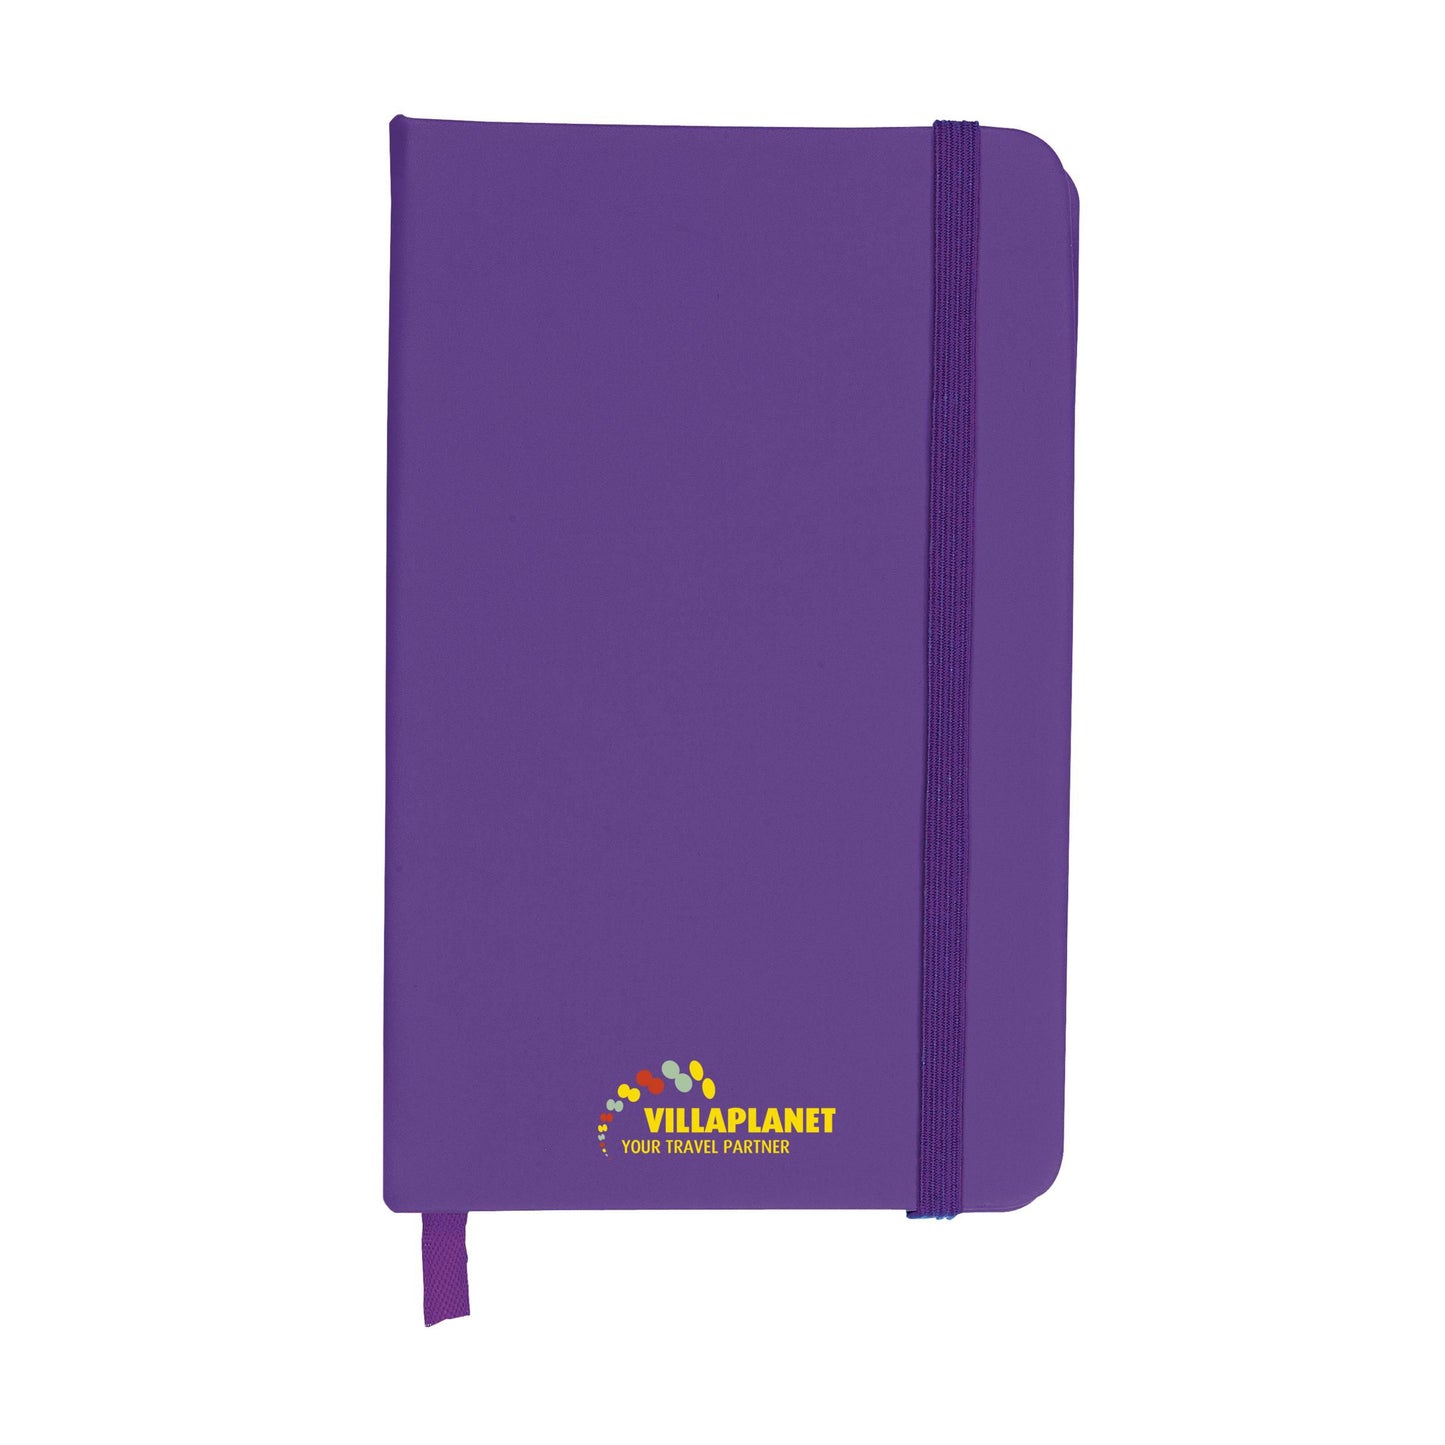 Pocket Notebook A6 Notizbuch